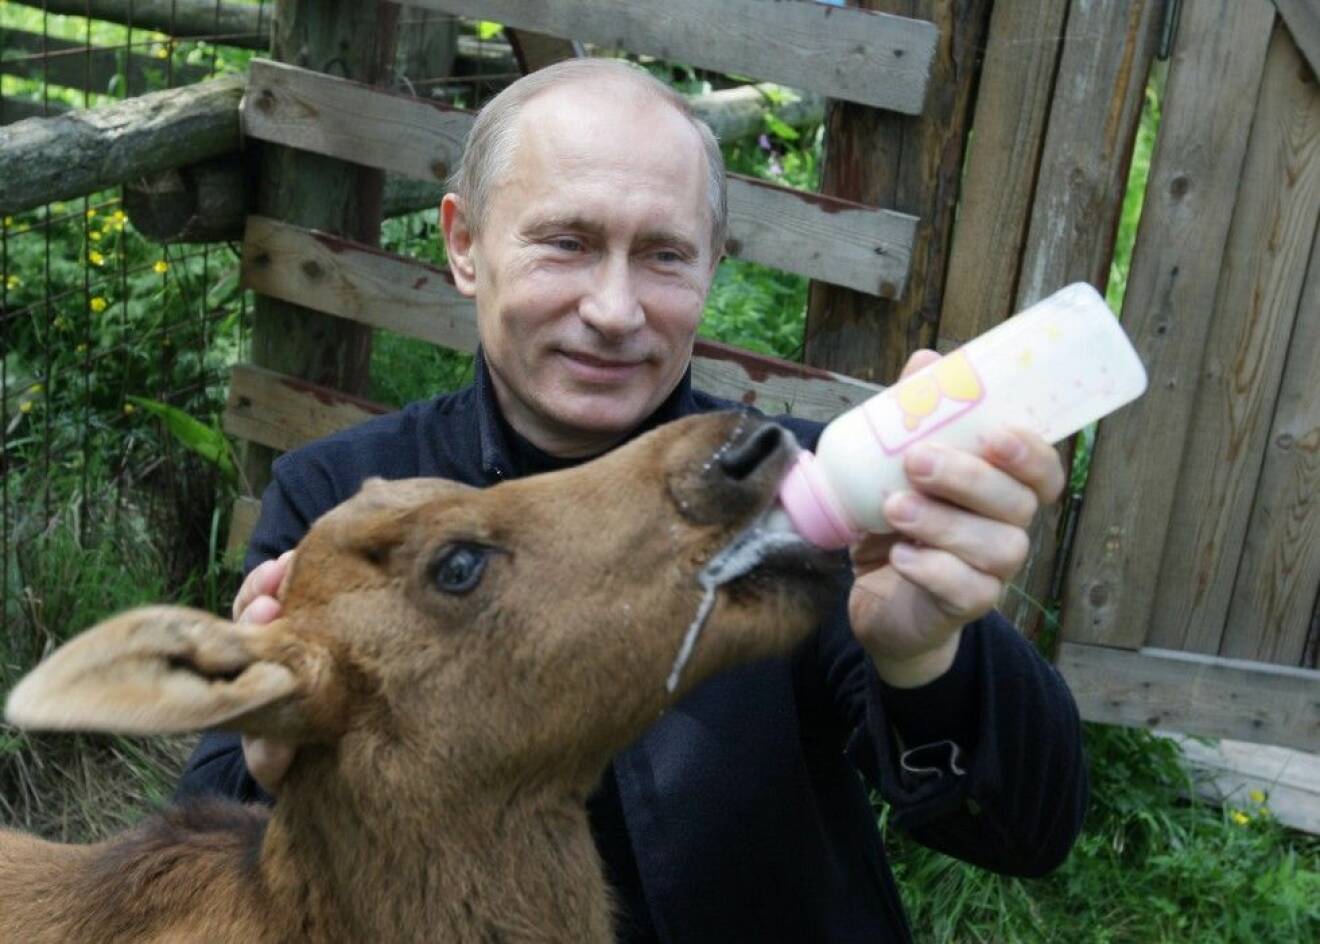 Rysslands president Vladimir Putin, 62, för en aggressiv politik och har fått öknamnet "Putler". Precis som Hitler på sin tid lät sig fotas med små söta barn för att framstå som snäll låter sig Putin fotograferas då han matar en gullig älgkalv med nappflaska.